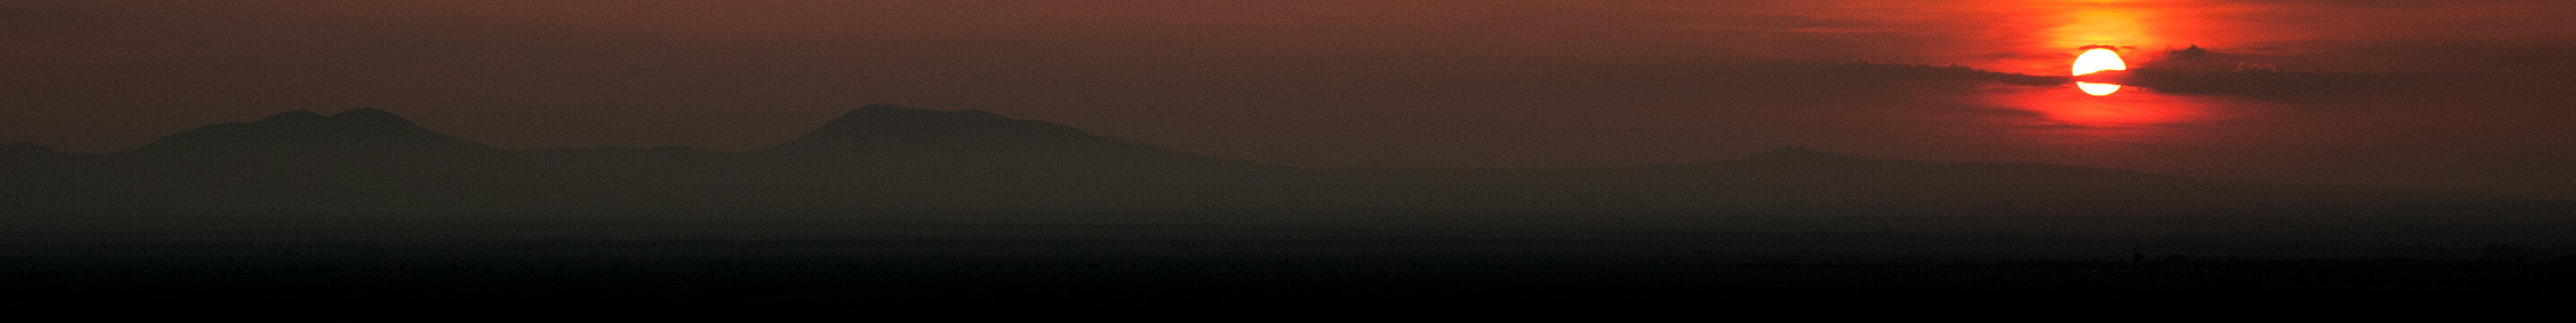 Misty reddish mountain landscape on a sunset.